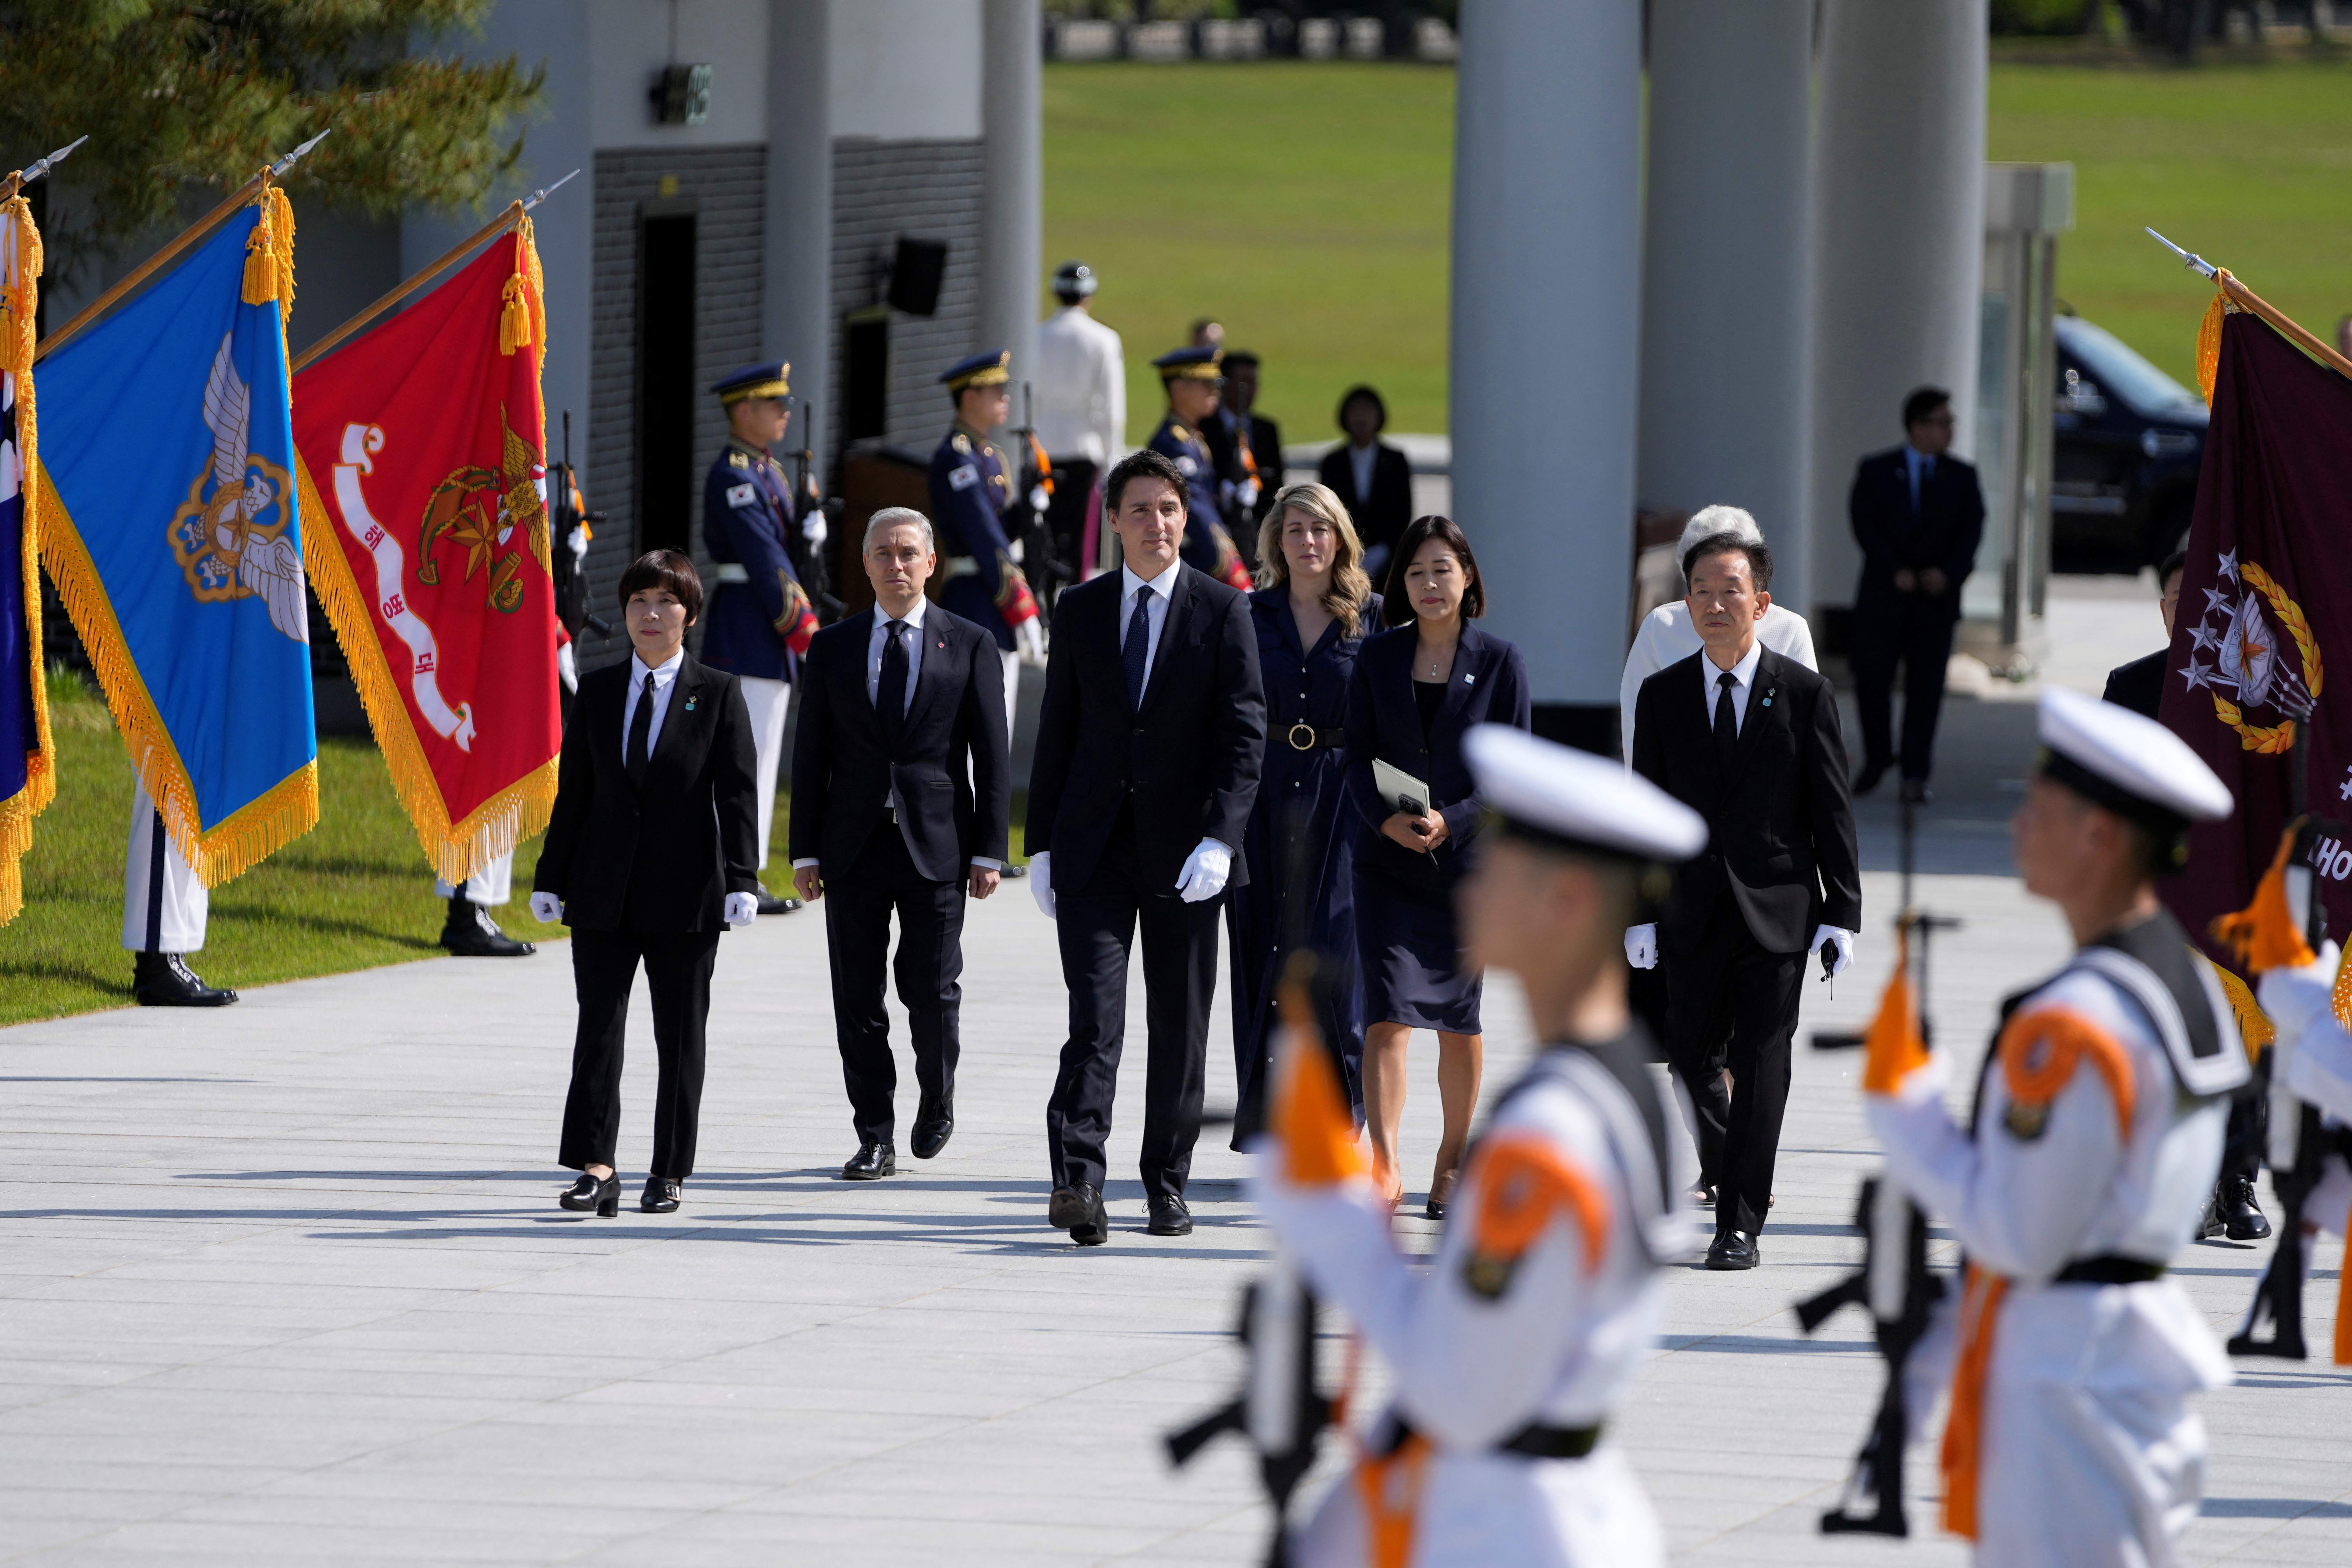 Il canadese Trudeau visita la Corea del Sud;  Focus su metalli e sicurezza